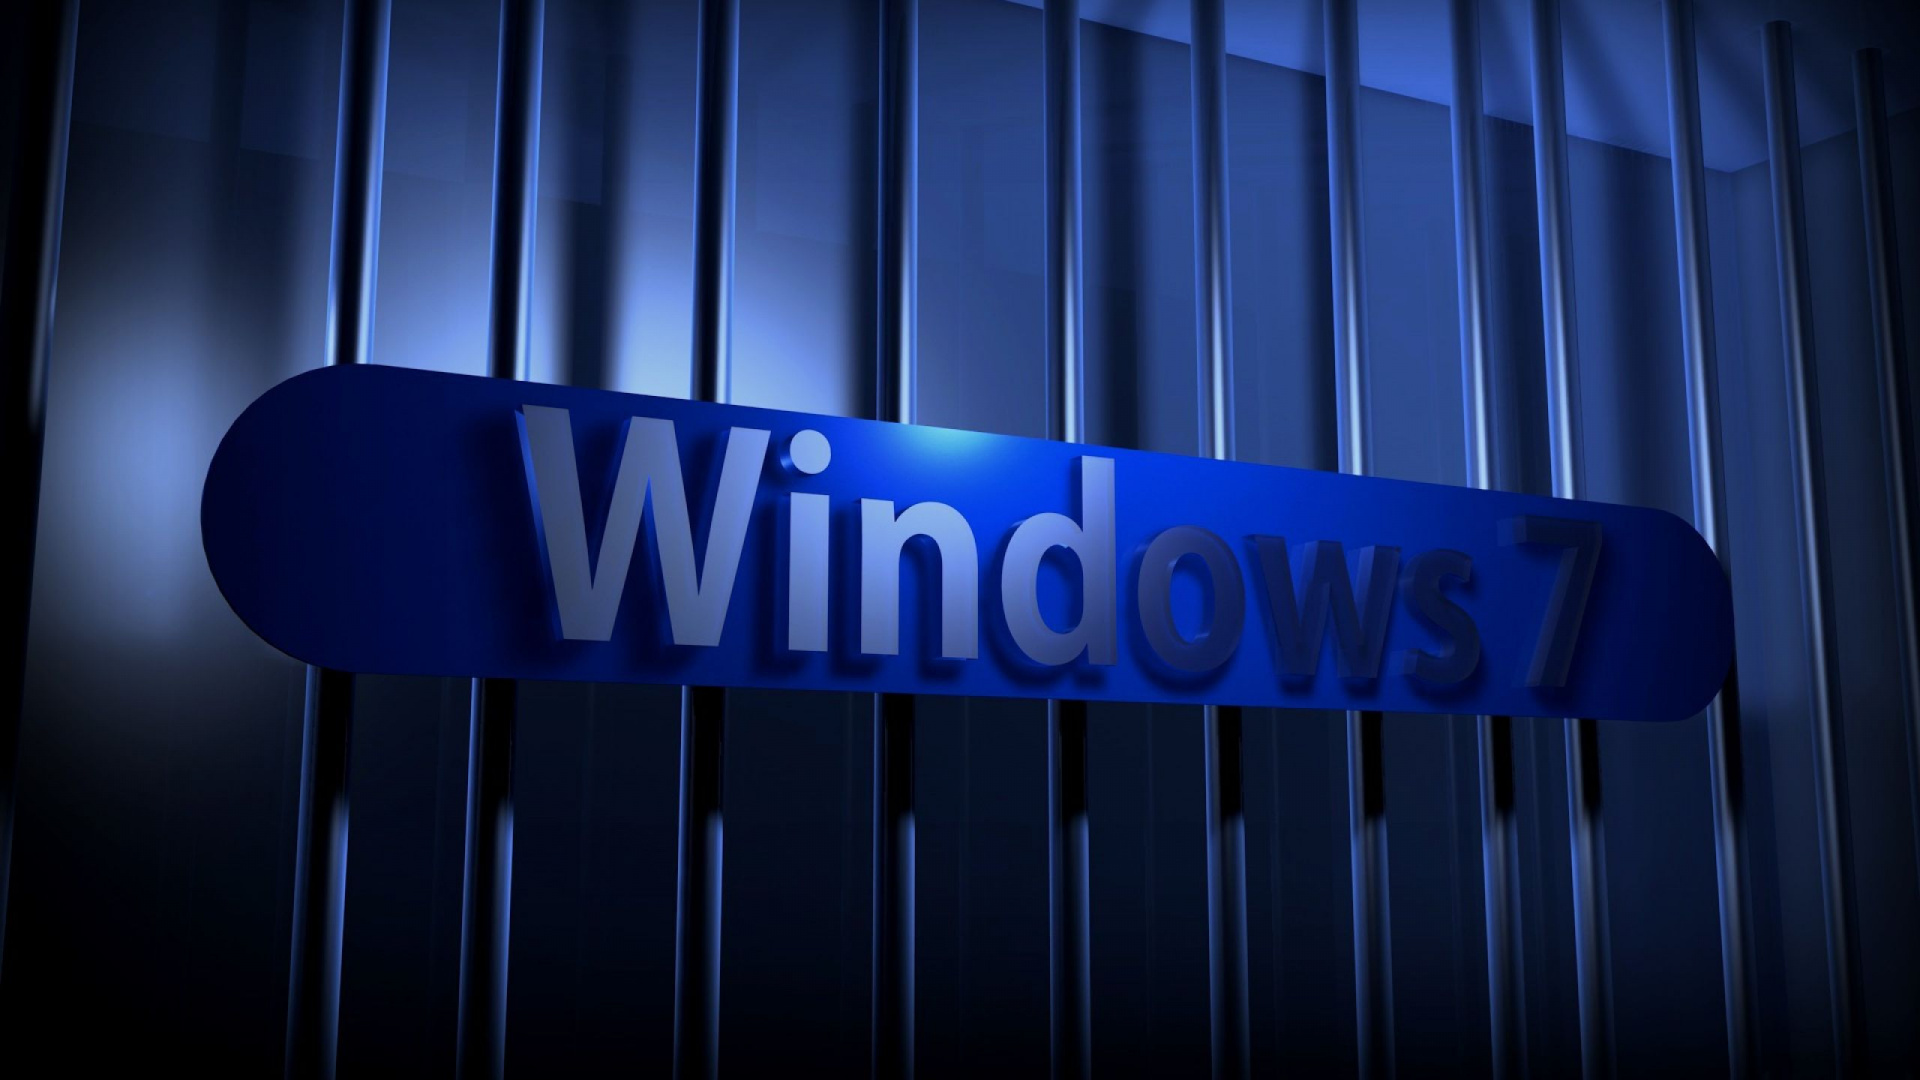 Windows 7, Blau, Licht, Electric Blue, Firmenzeichen. Wallpaper in 1920x1080 Resolution